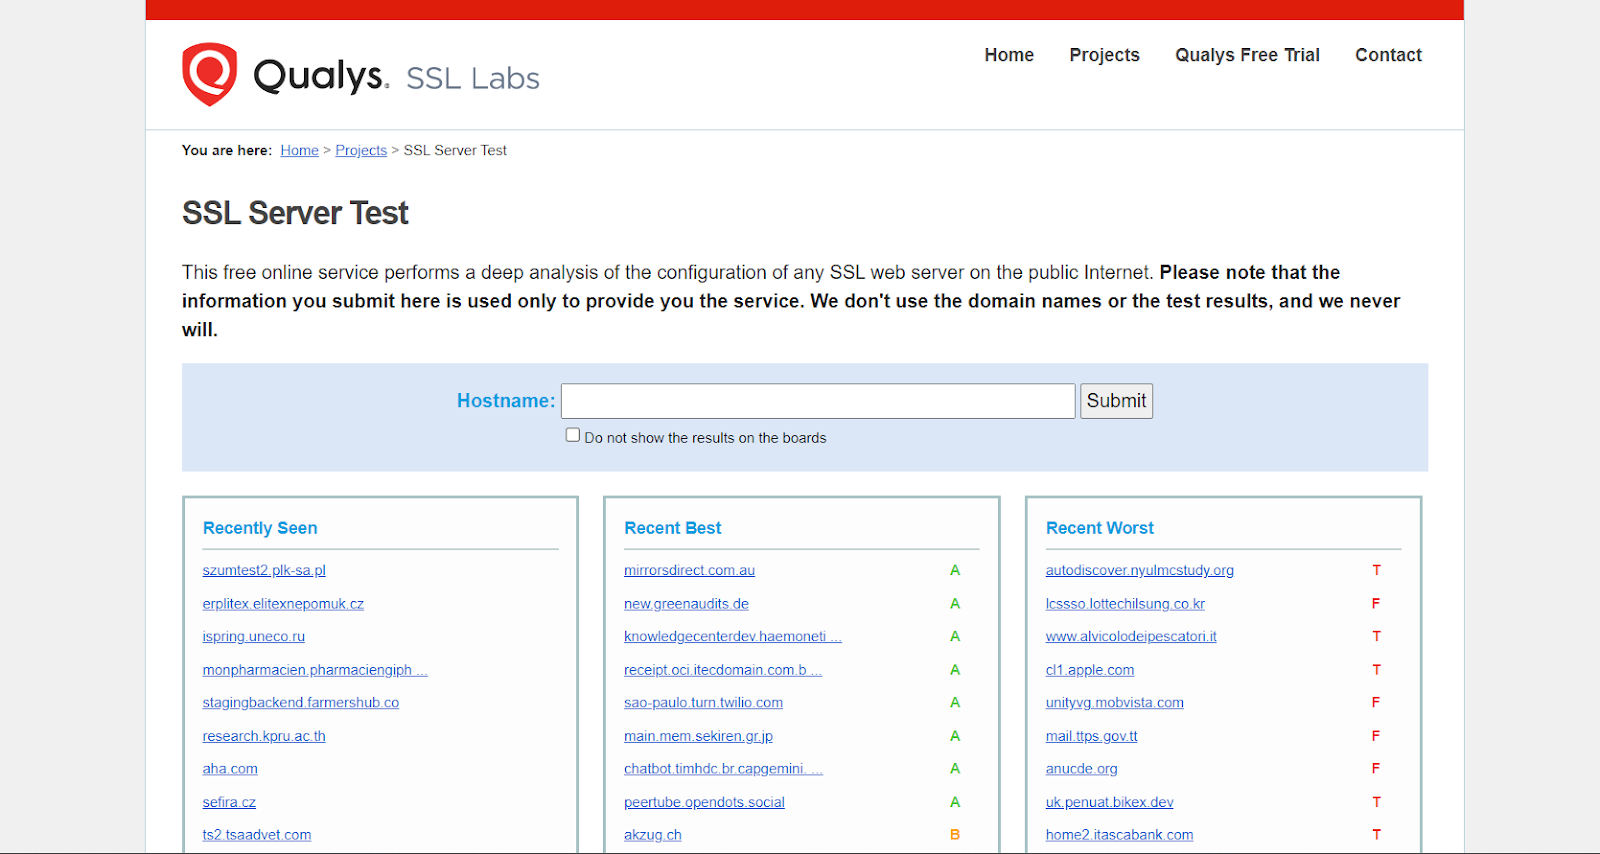 SSL certificate 